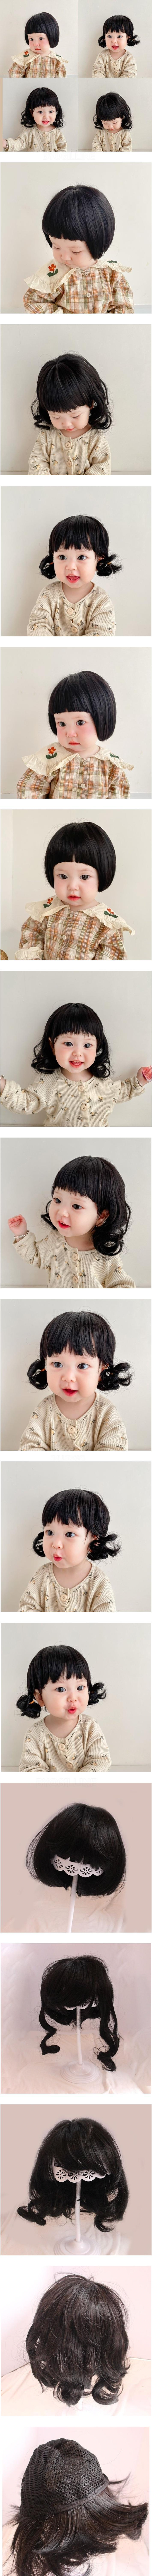 Miso - Korean Baby Fashion - #babyoninstagram - Bebe Wig  - 2